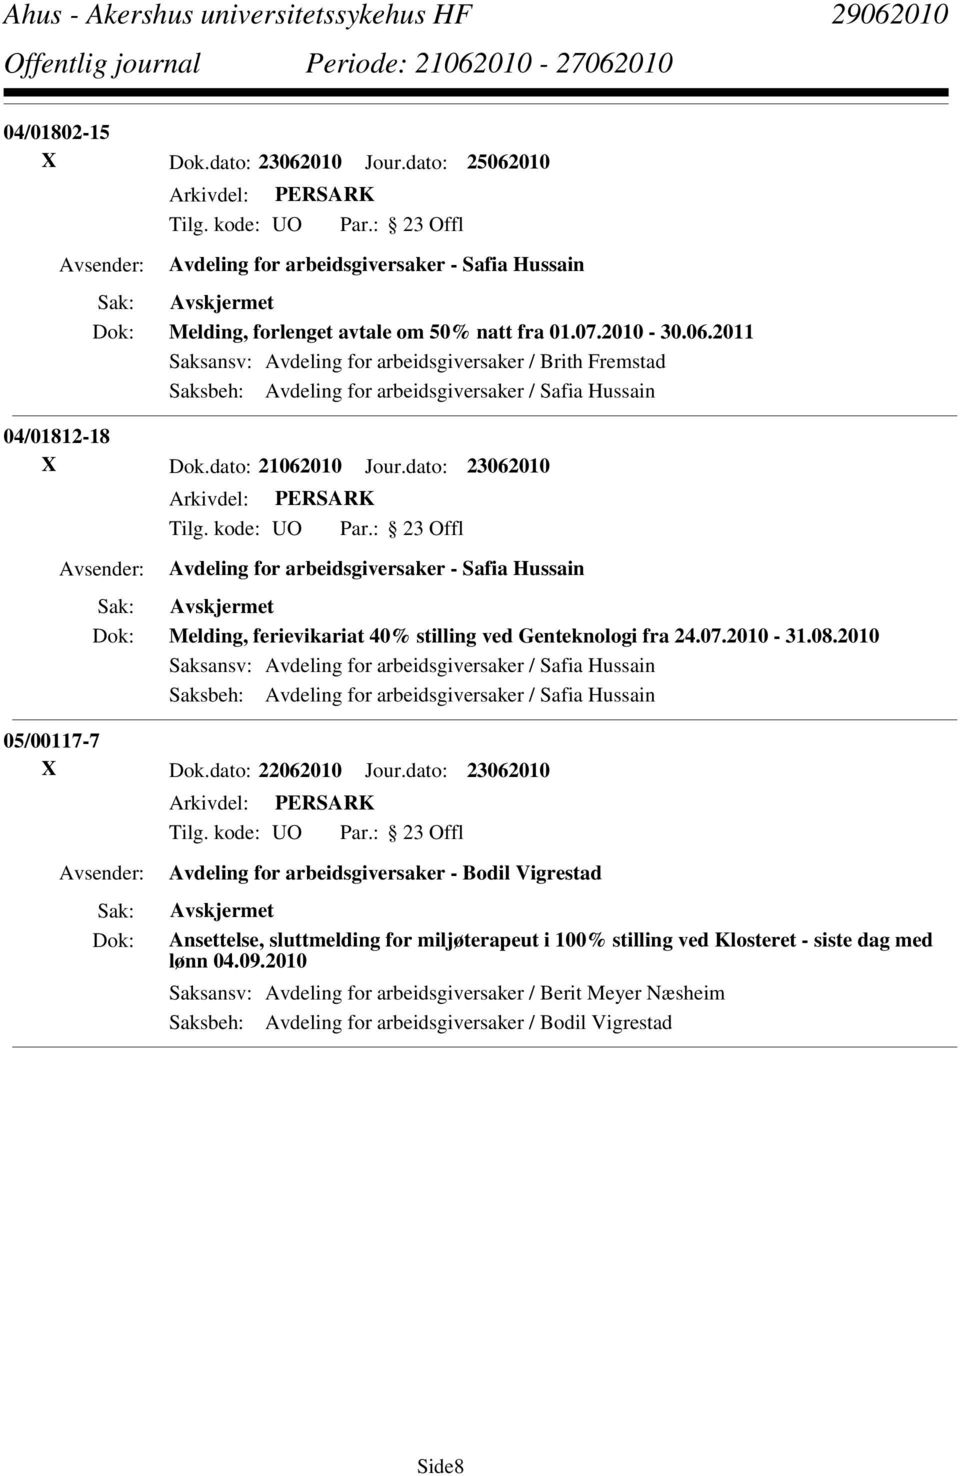 2010 Saksansv: Avdeling for arbeidsgiversaker / Safia Hussain Saksbeh: Avdeling for arbeidsgiversaker / Safia Hussain 05/00117-7 X Dok.dato: 22062010 Jour.